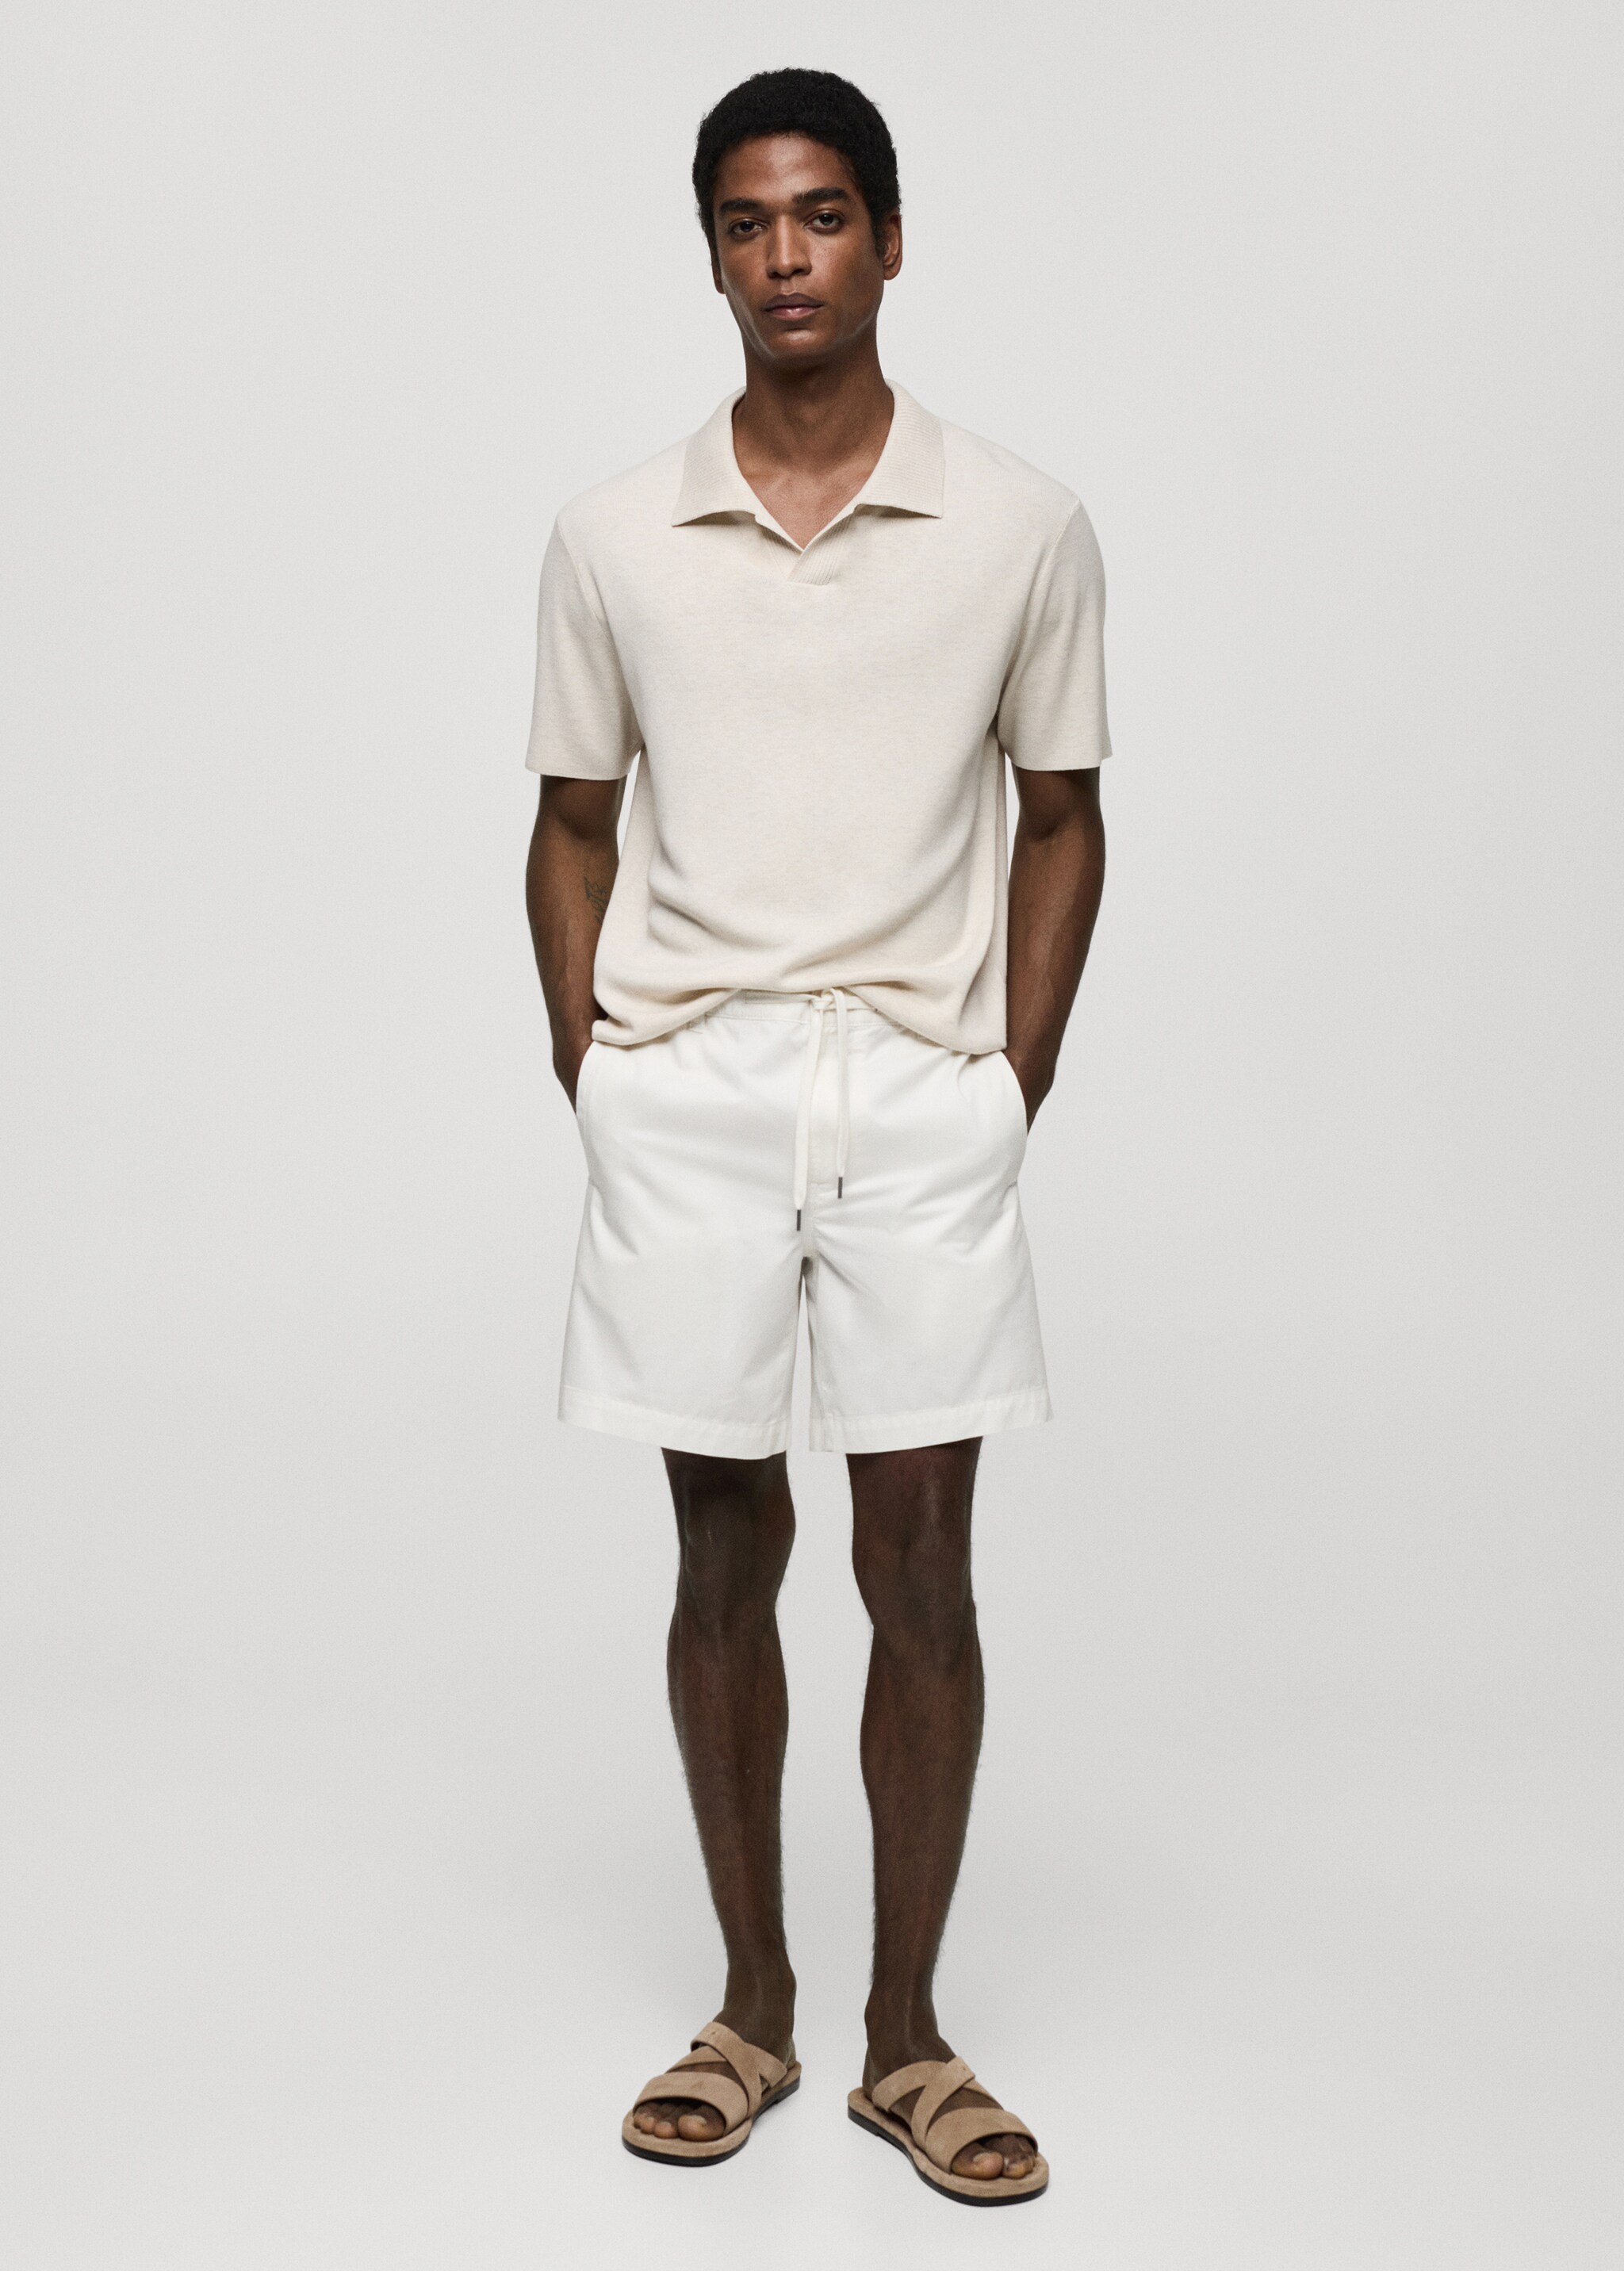 100% cotton drawstring Bermuda shorts - General plane